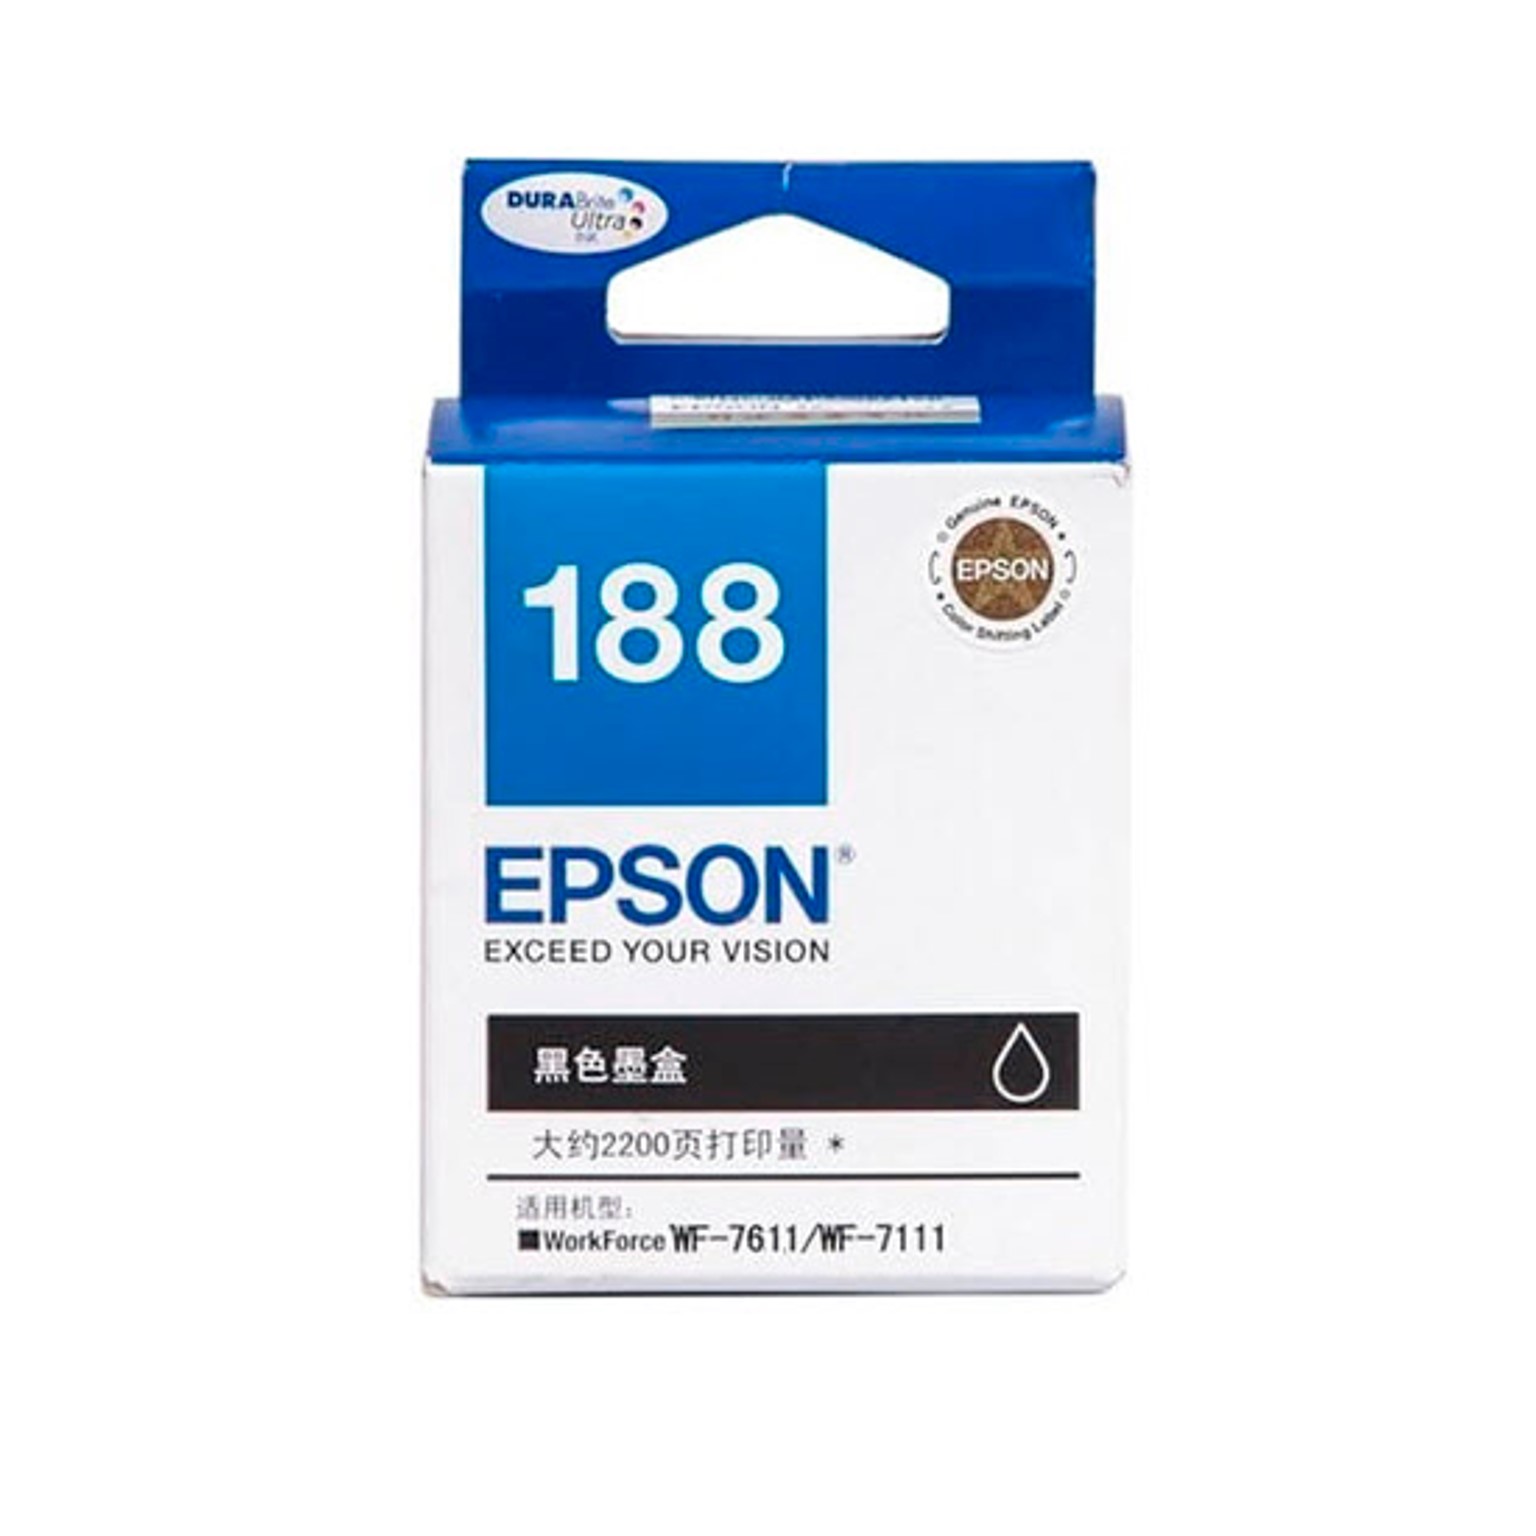 Epson 188 Black